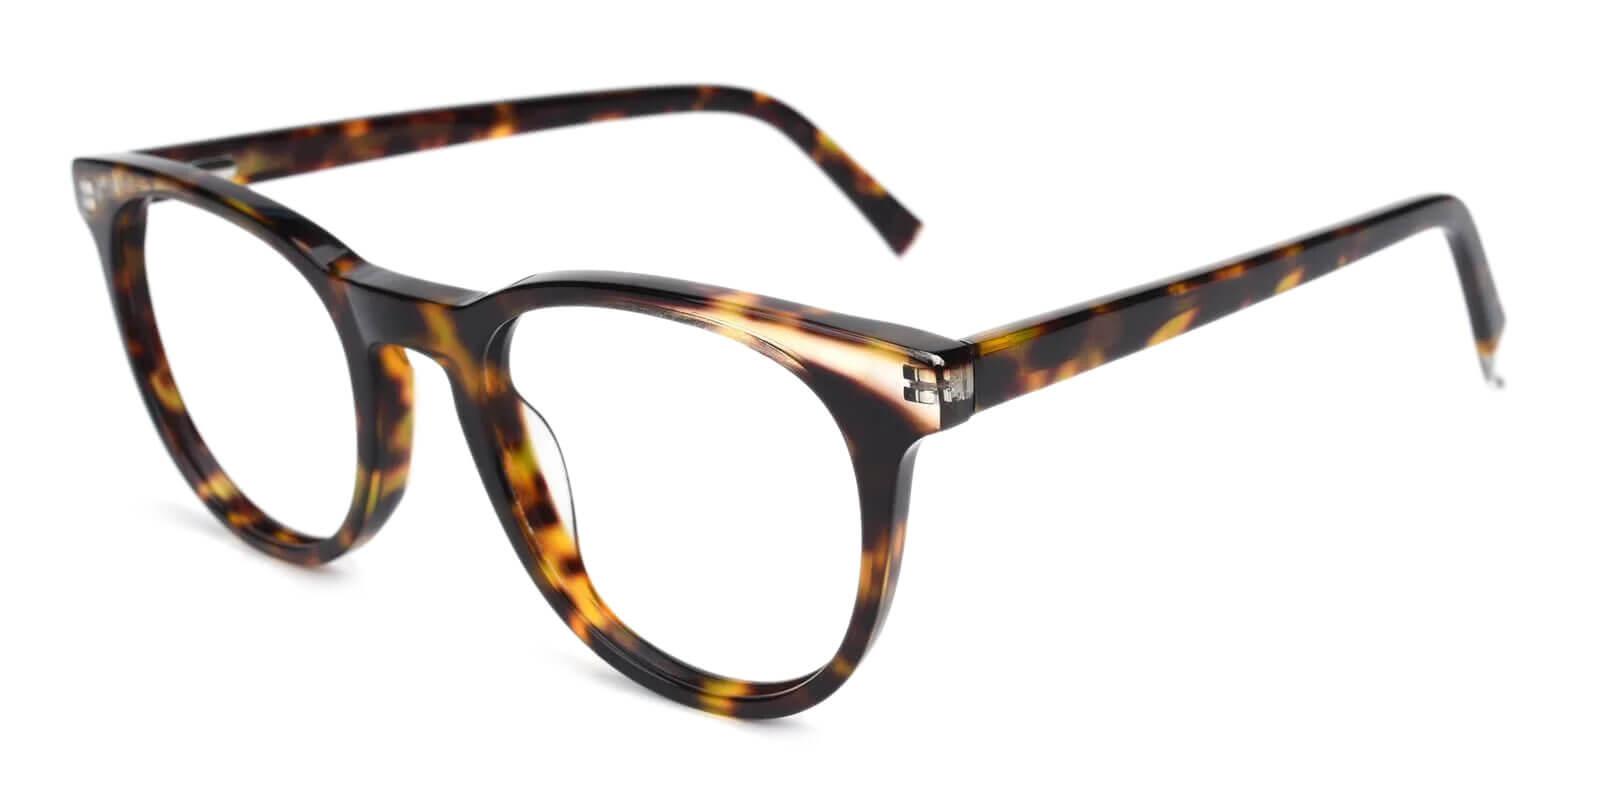 Dimona Tortoise Acetate Eyeglasses , UniversalBridgeFit Frames from ABBE Glasses